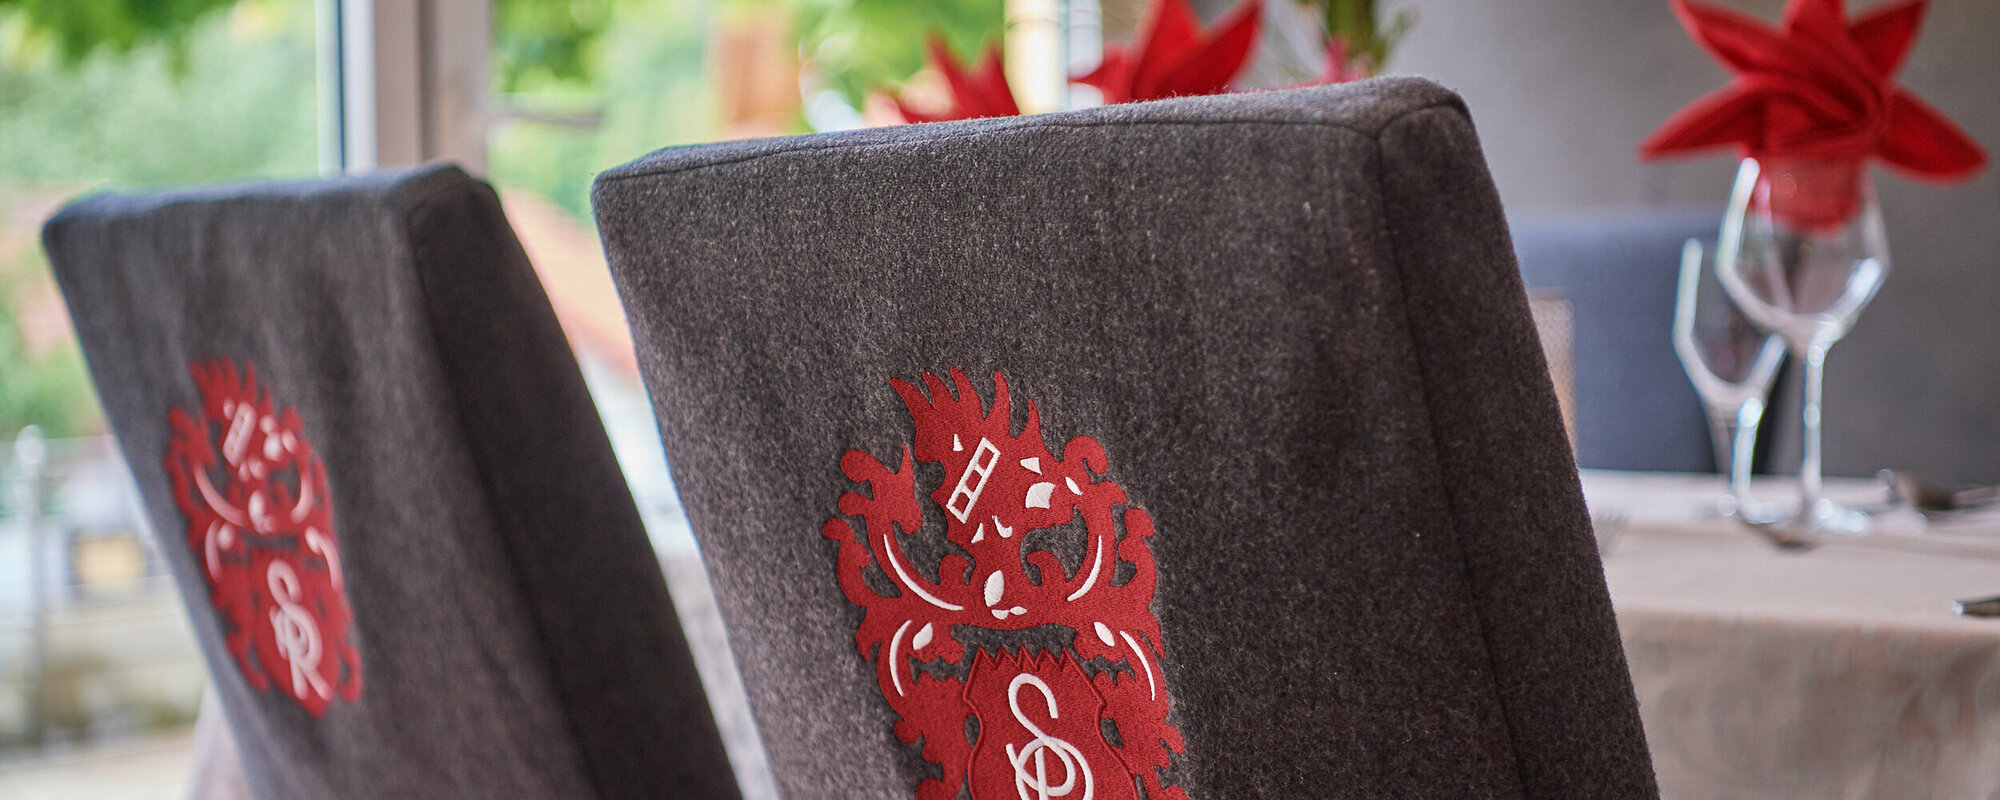 Rückansicht von zwei Stühlen mit grauen Hussen und roten Wappen.